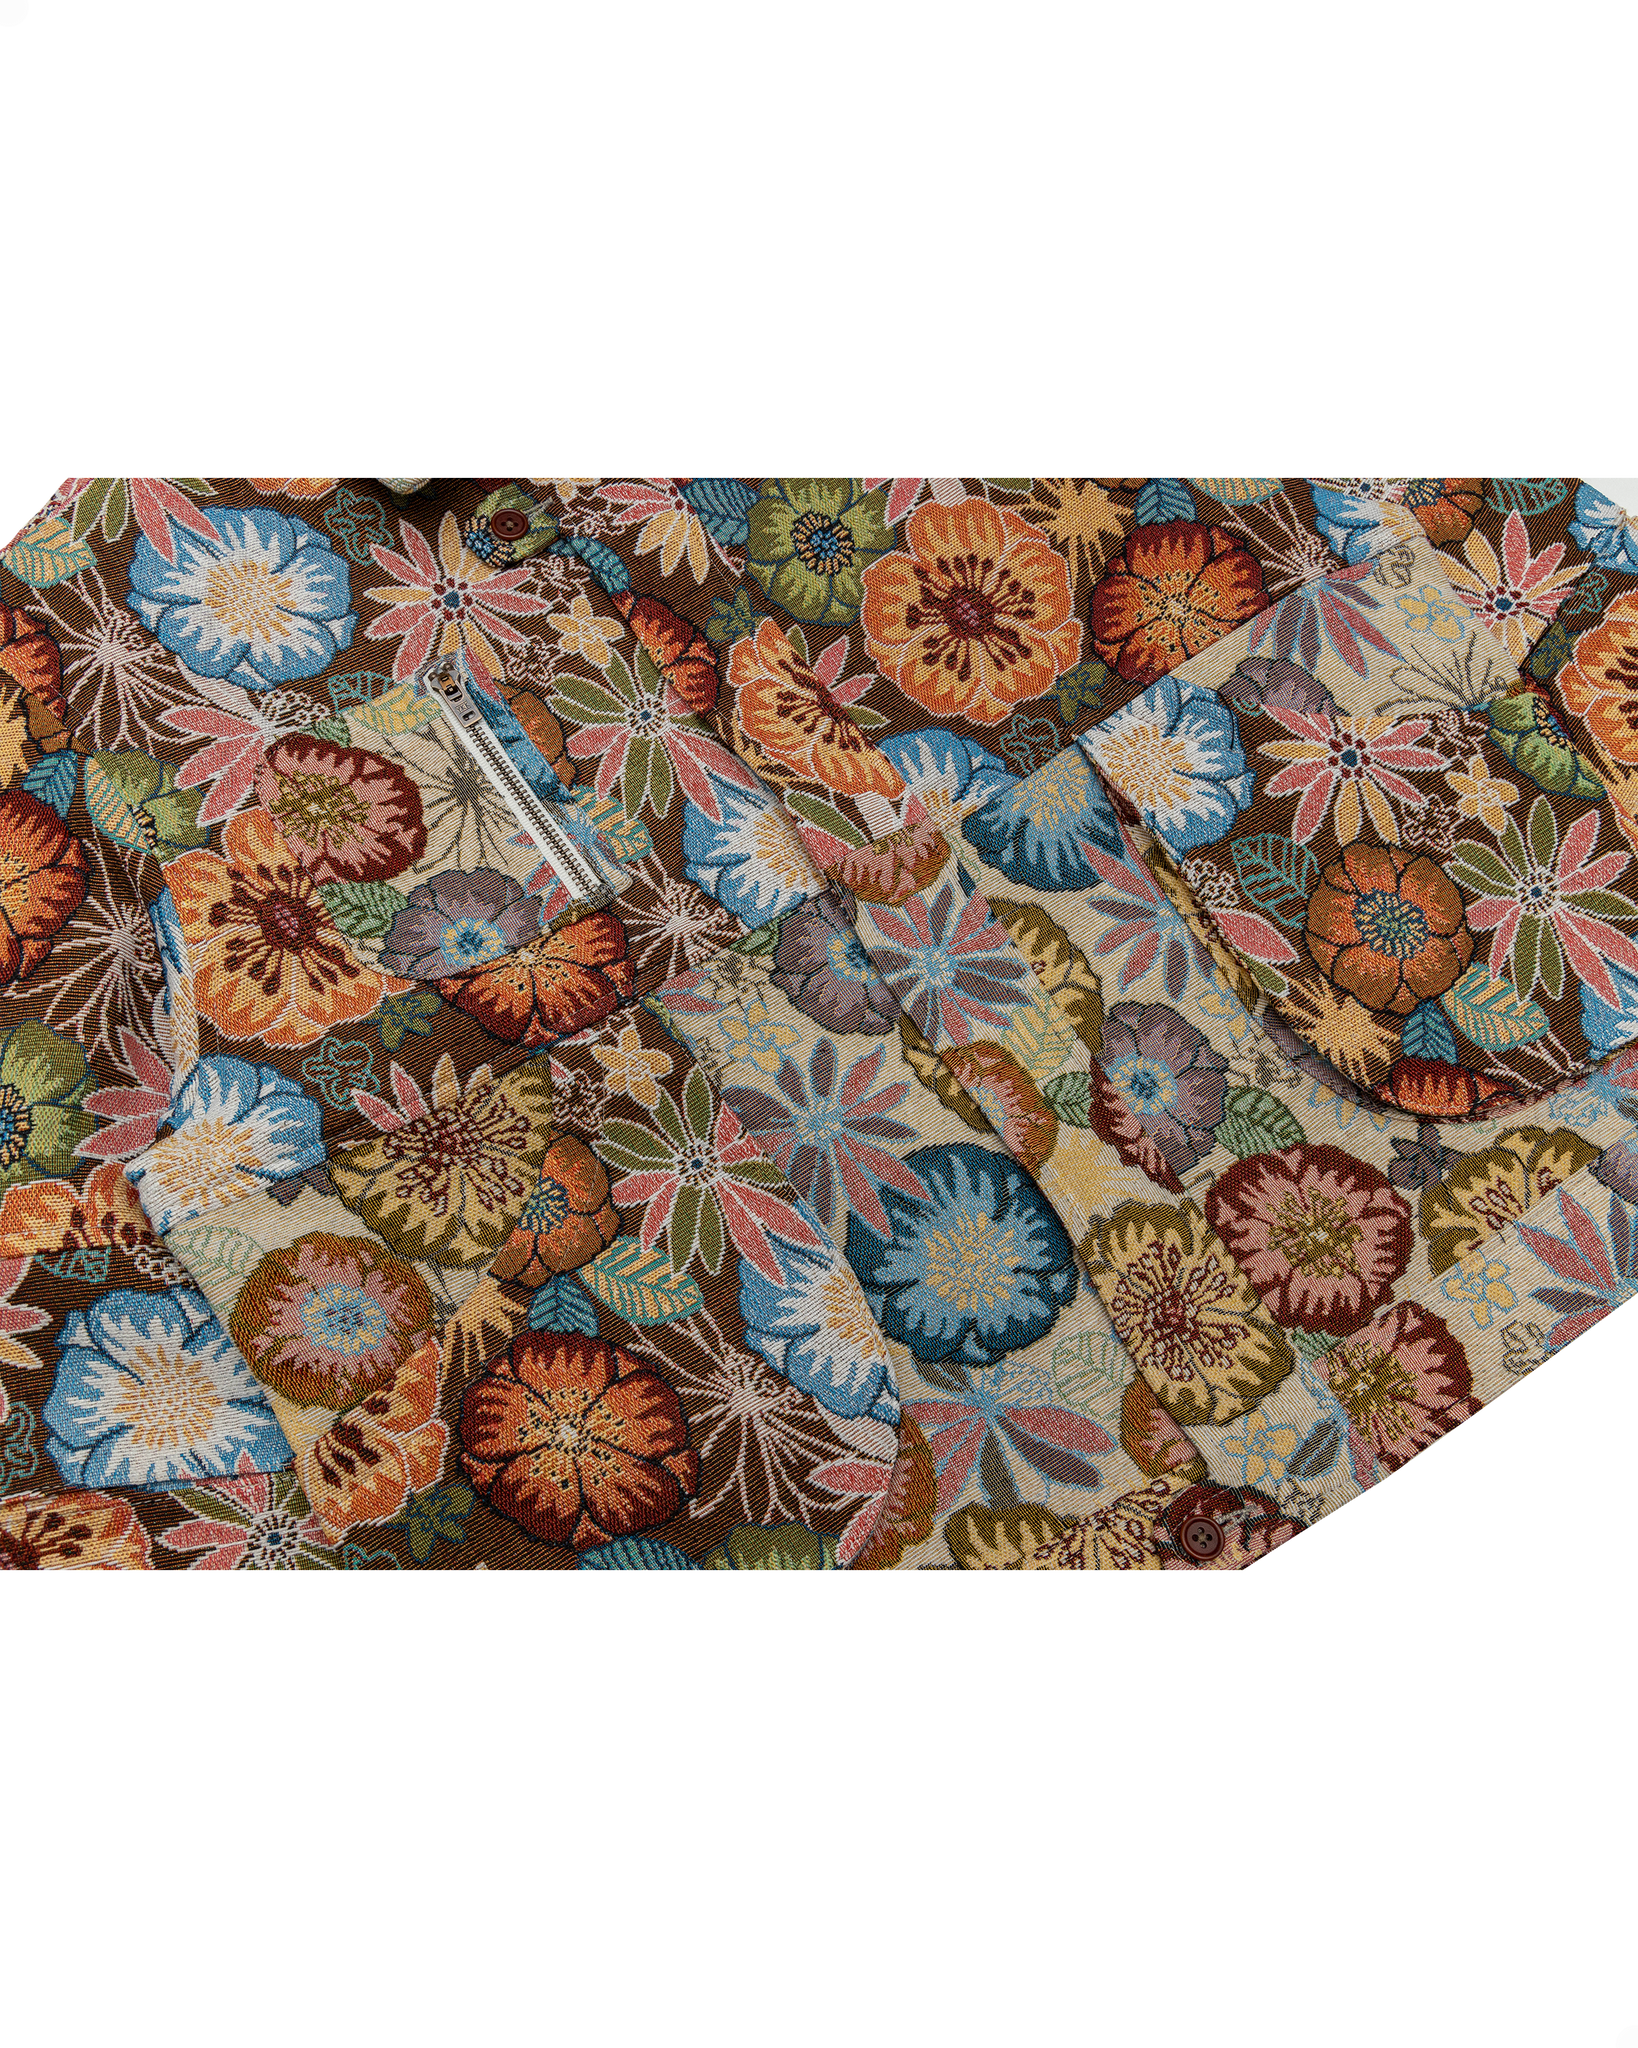 Pine Blouson Jacket: Floral Melange